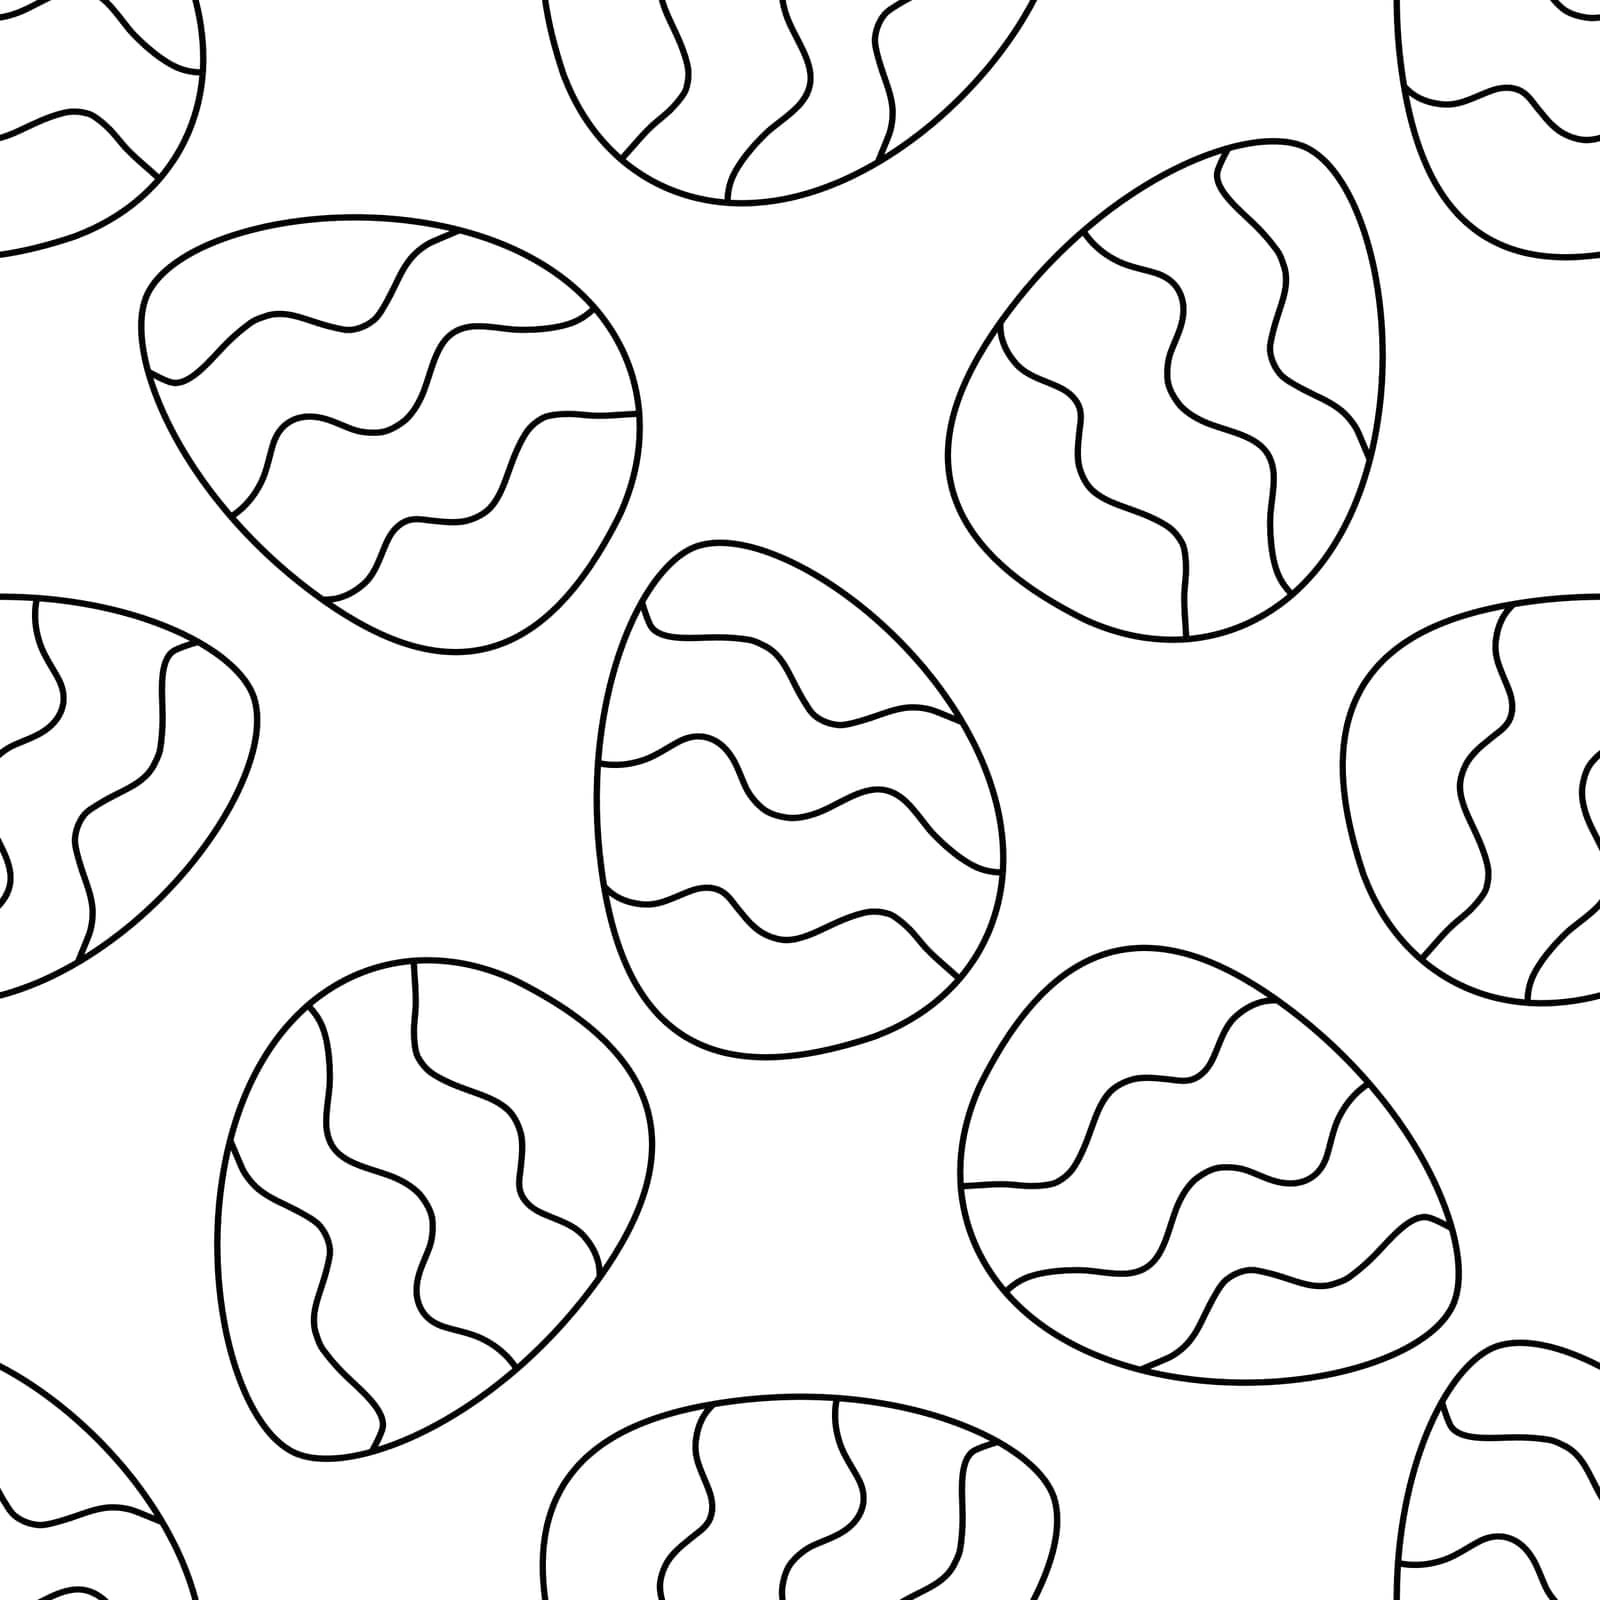 easter egg pattern hunting spring pattern textile line doodle